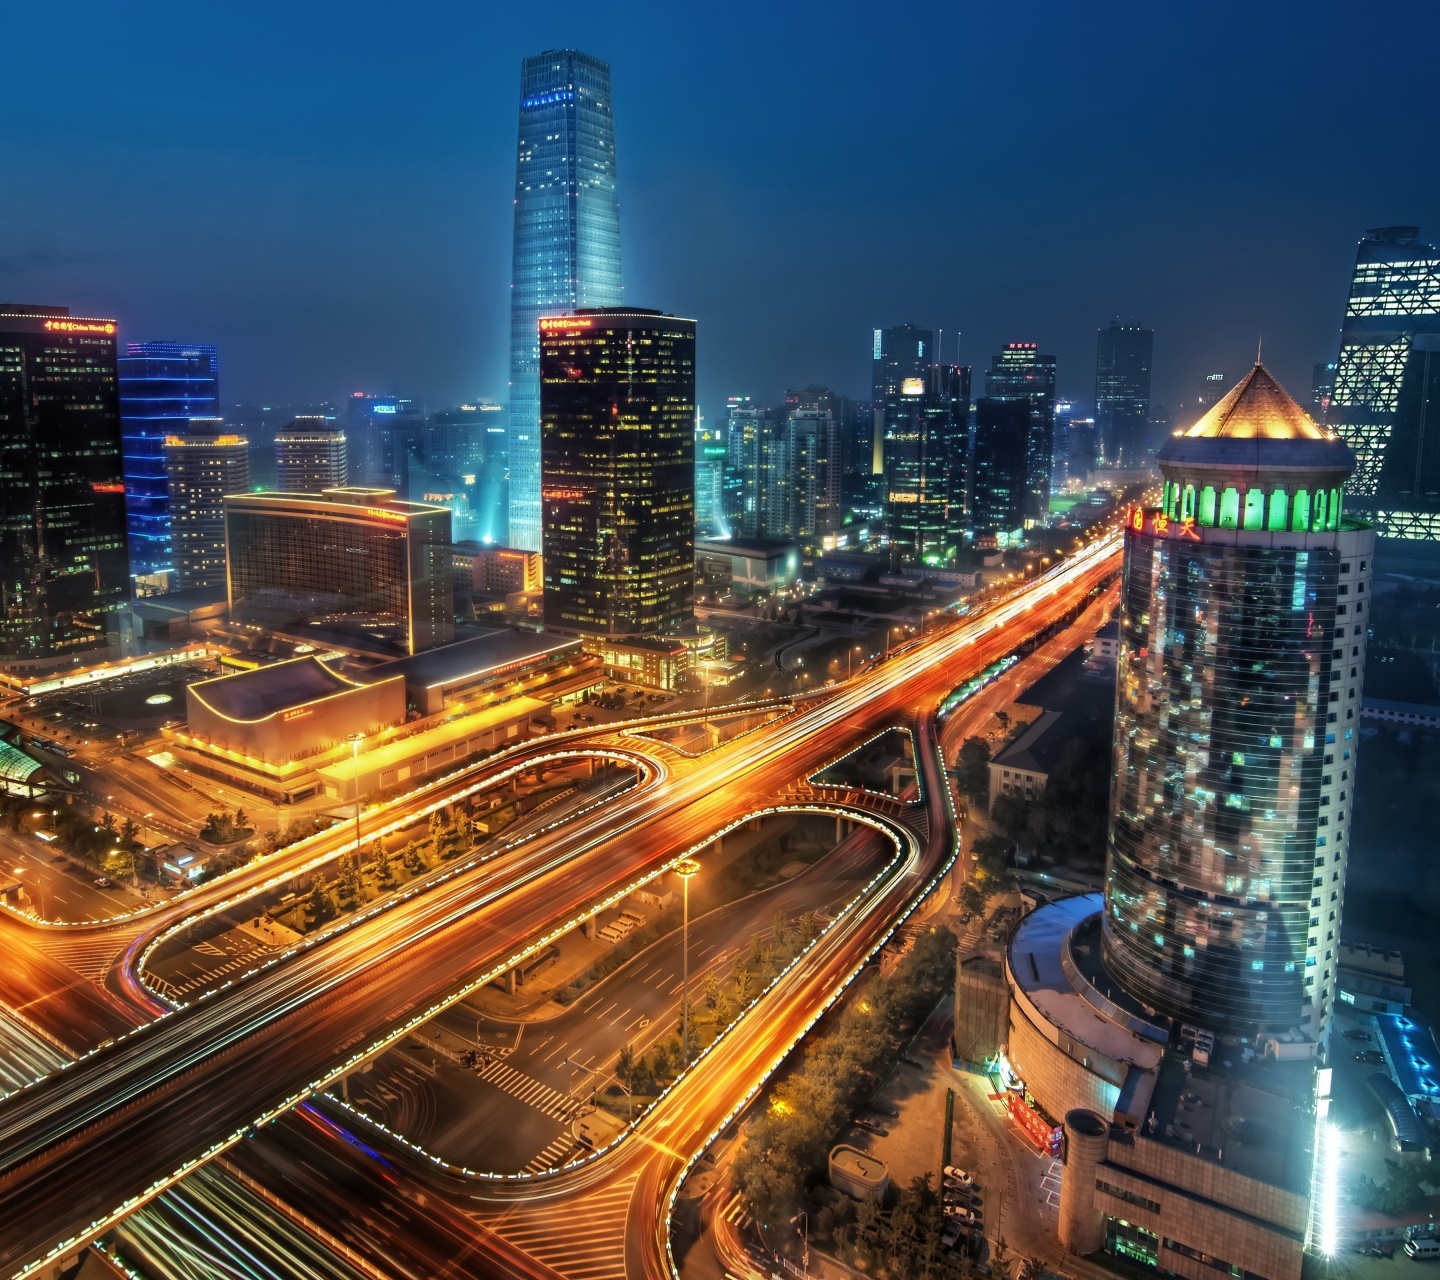 Cityscape Of Beijing On Night